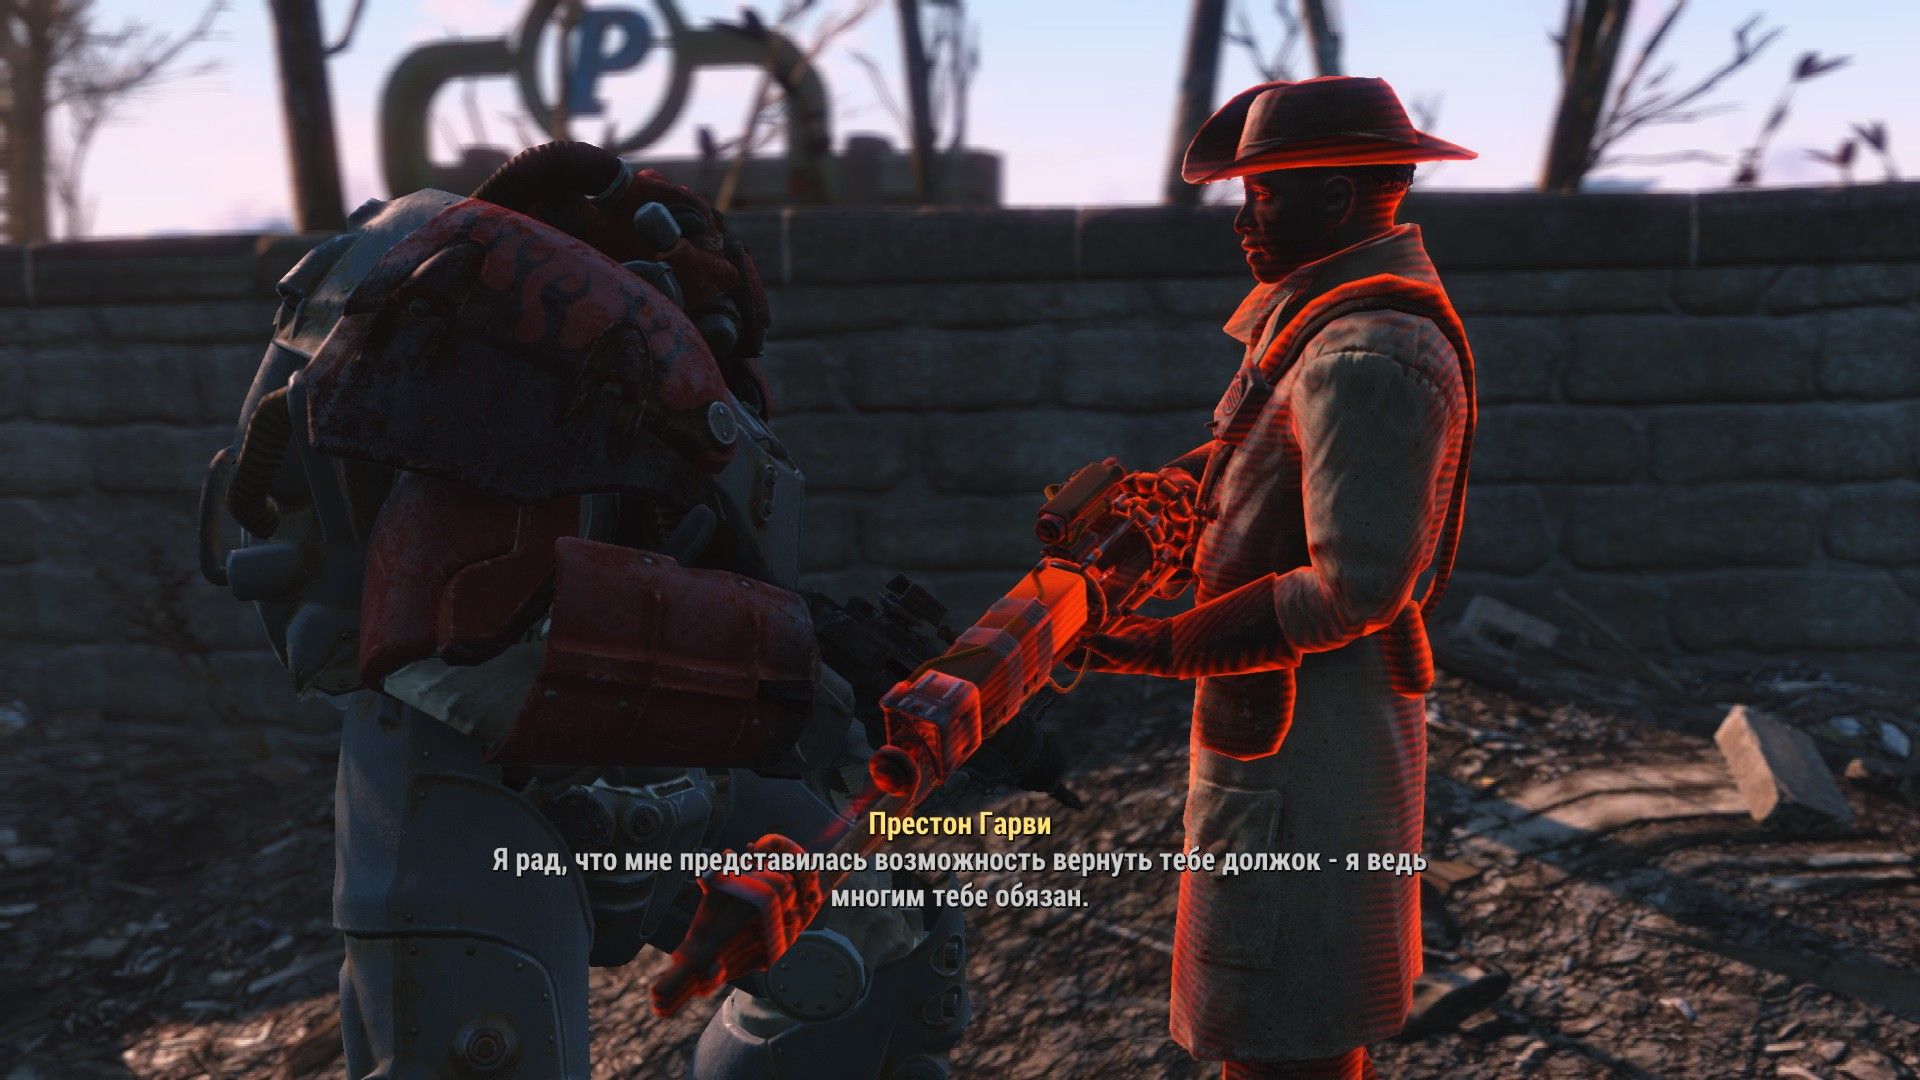 Fallout 4 престон гарви нет диалога фото 67